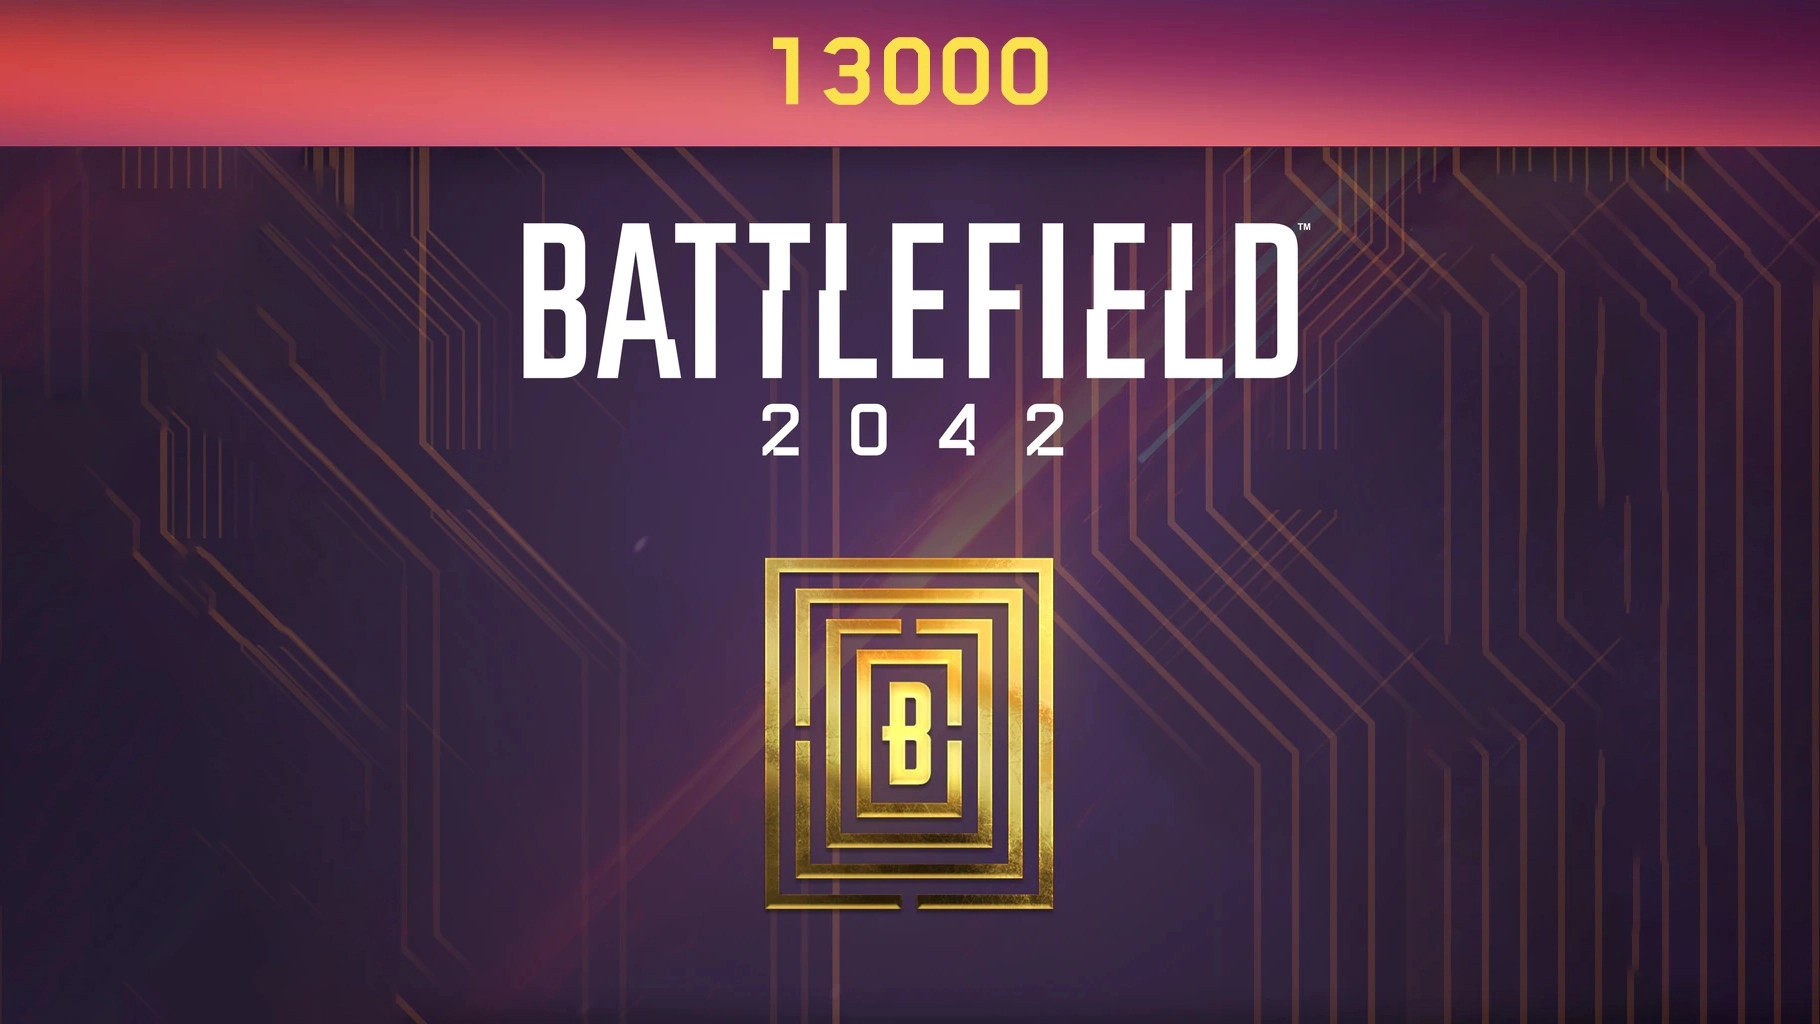 Battlefield 2042 - 13000 BFC Balance XBOX One / Xbox Series X|S CD Key, $96.6